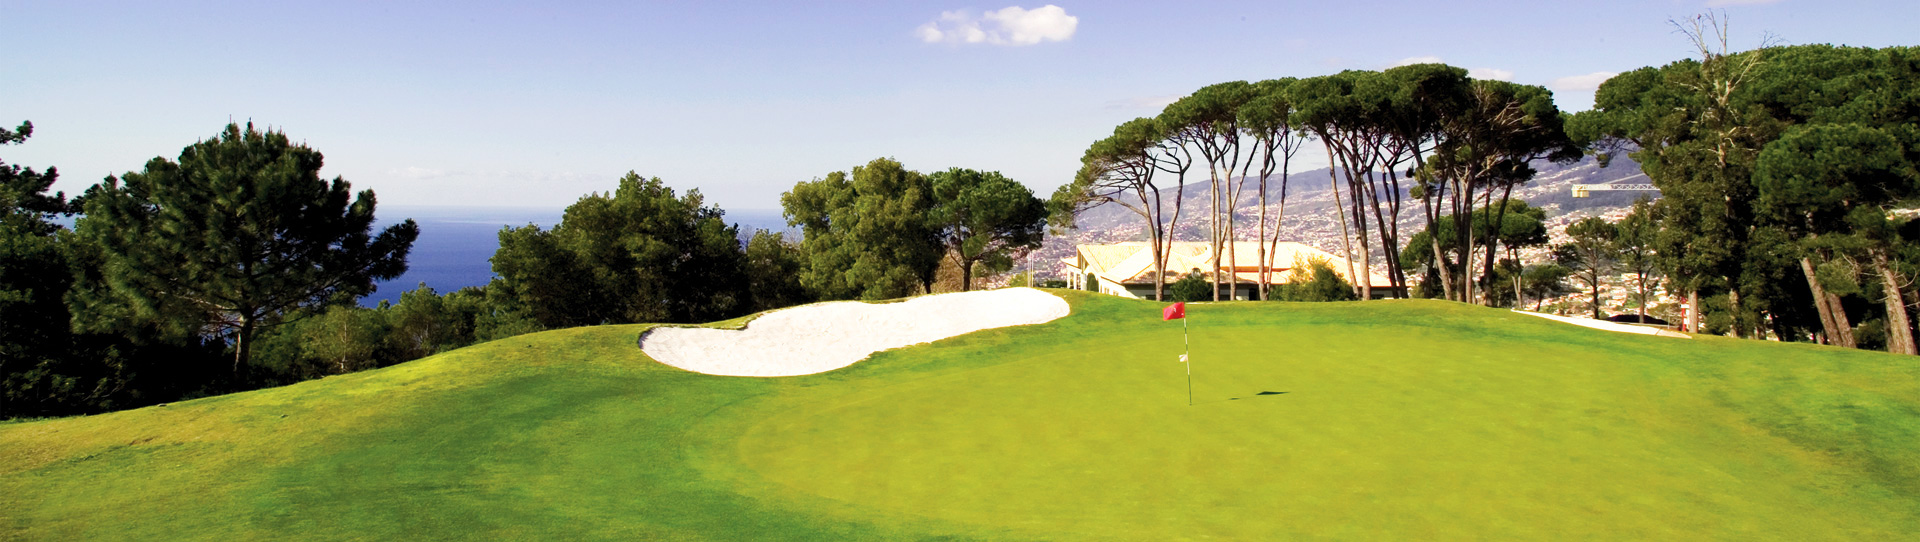 Portugal golf courses - Palheiro Golf Course - Photo 1